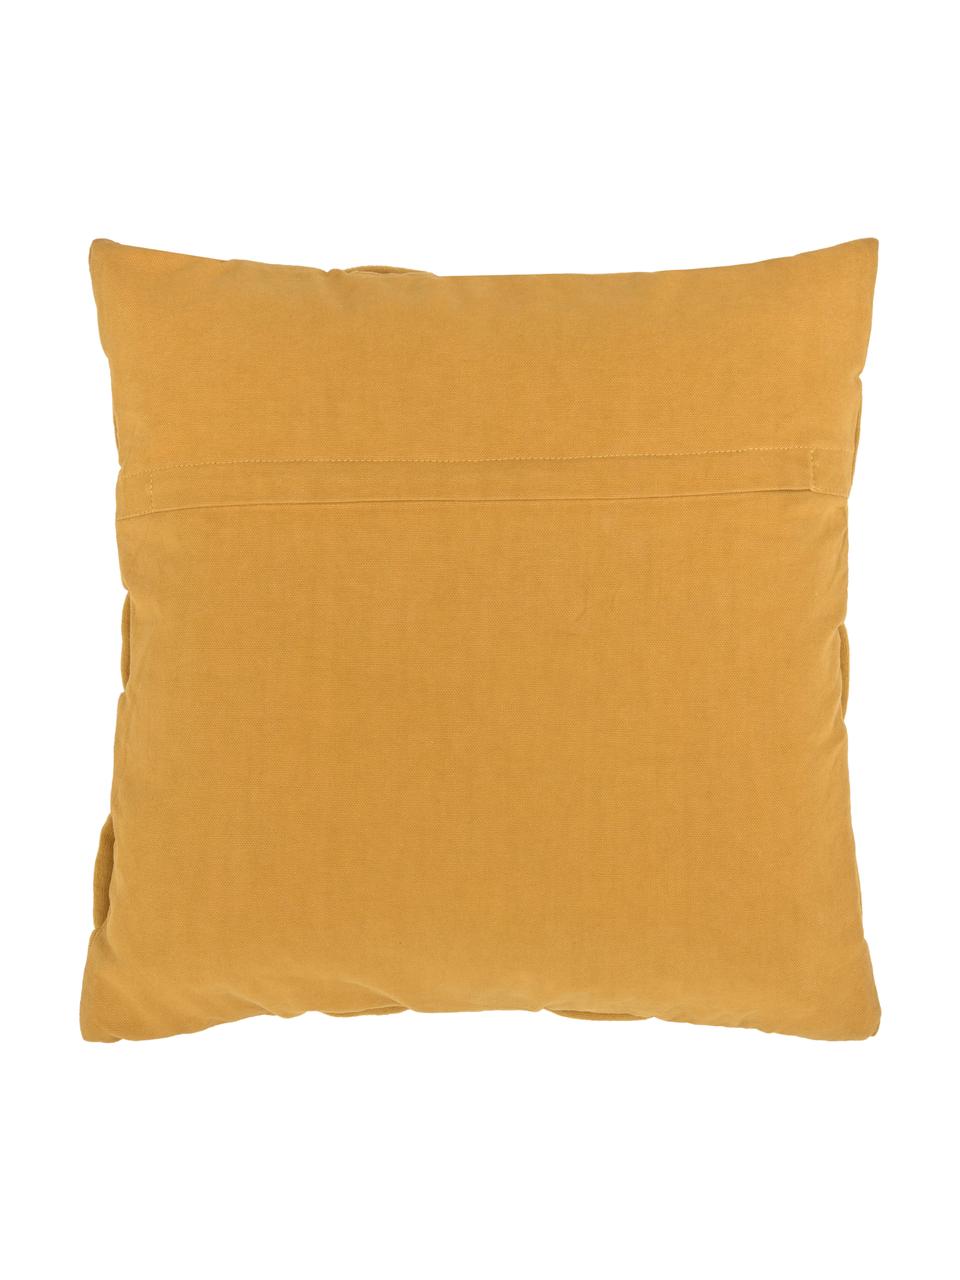 Pleciona poszewka na poduszkę Norman, Żółty, S 40 x D 40 cm